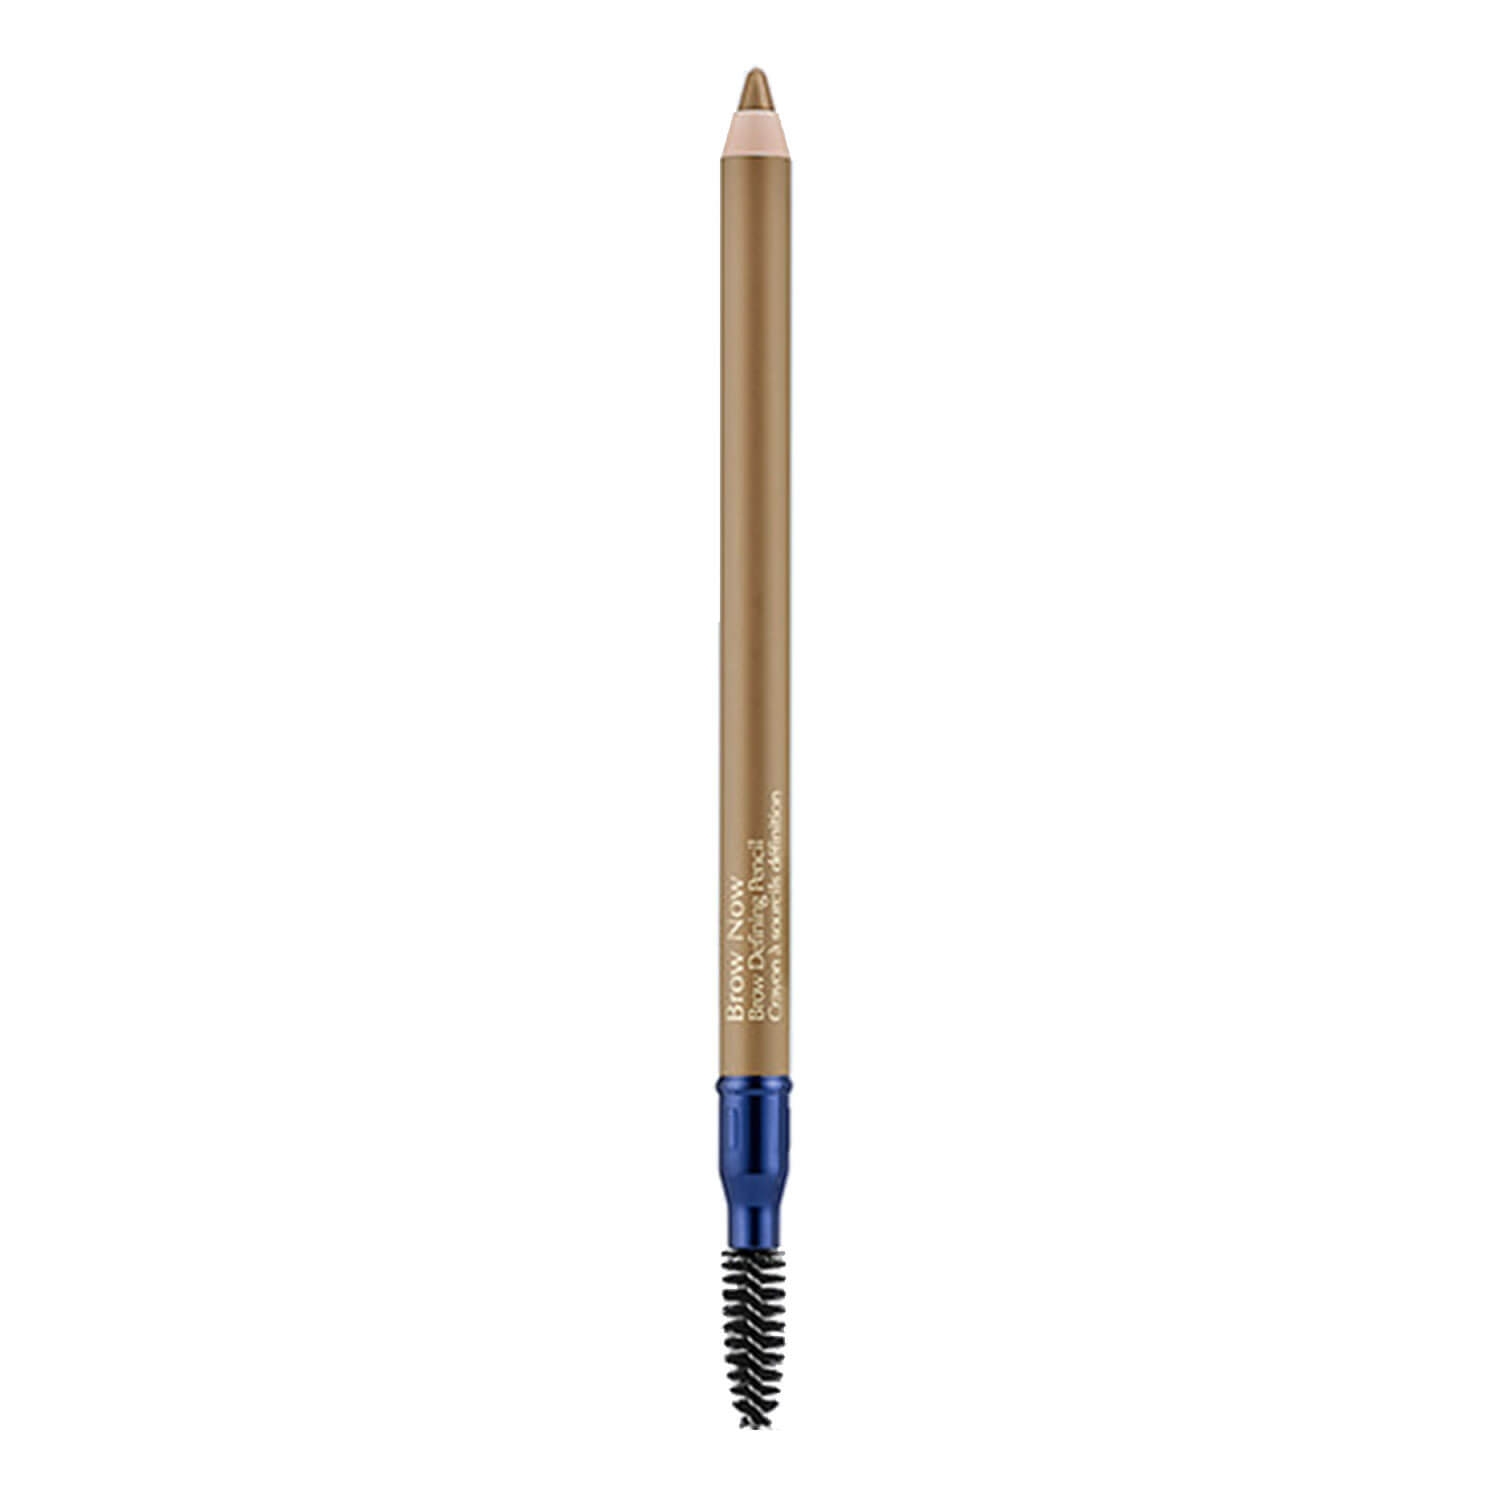 Image du produit de Brow Now - Brow Defining Pencil 01 Blonde